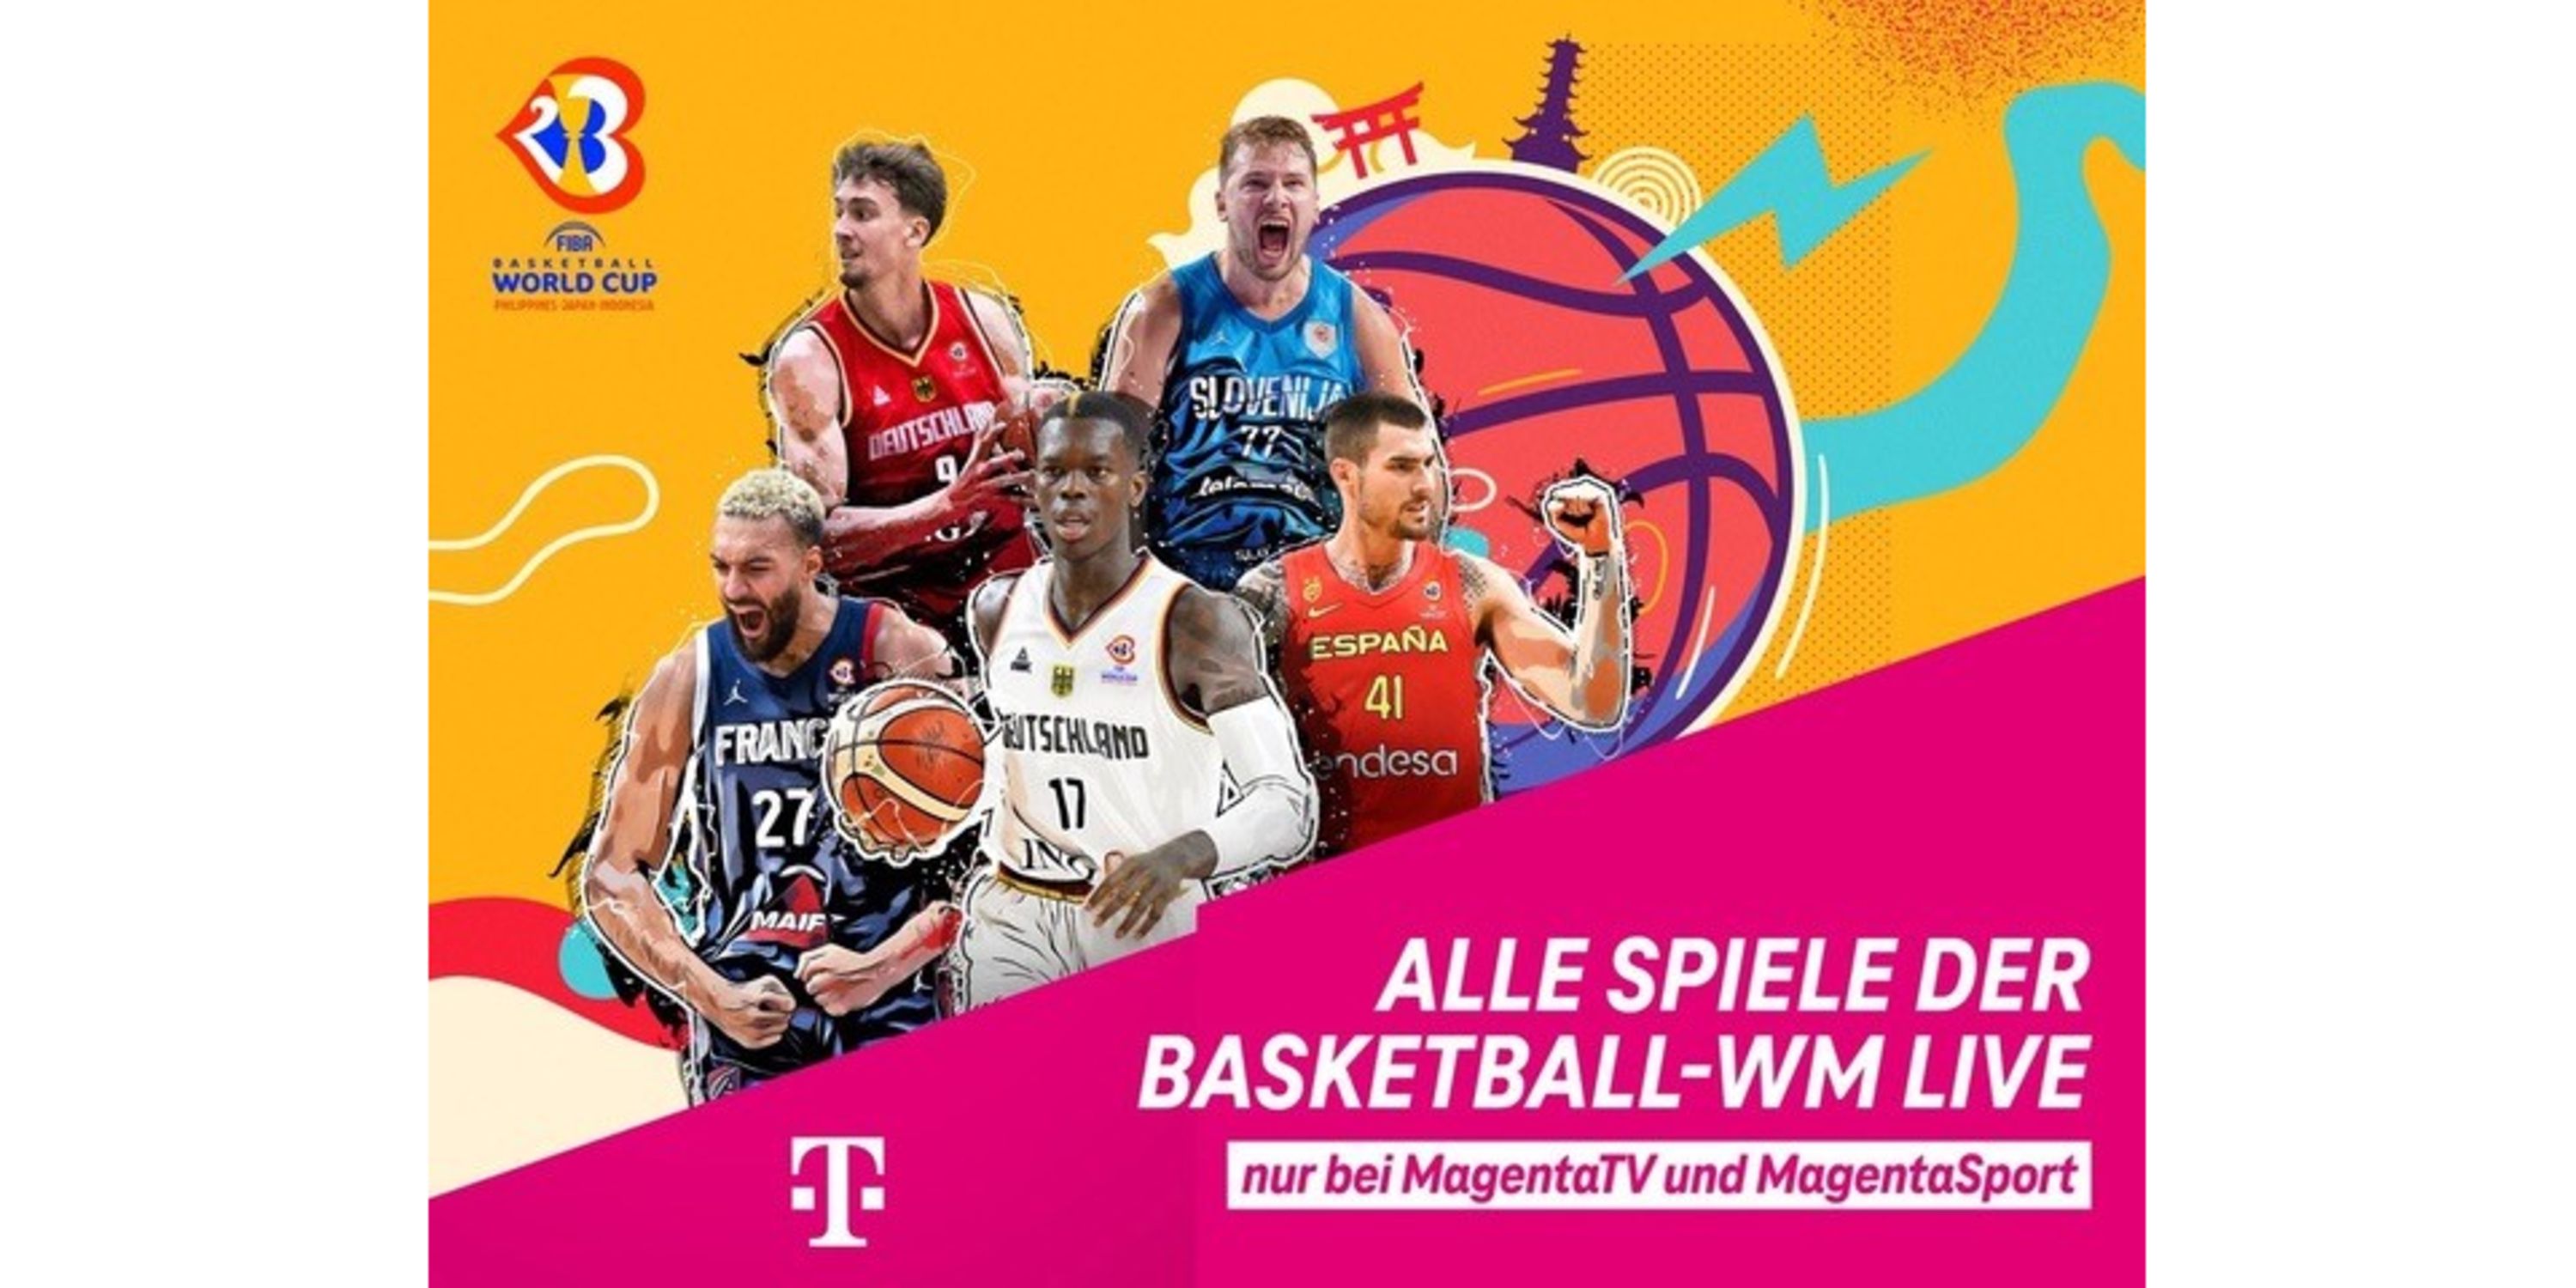 Basketball WM und Countdown komplett live bei MagentaSport Deutsche Telekom